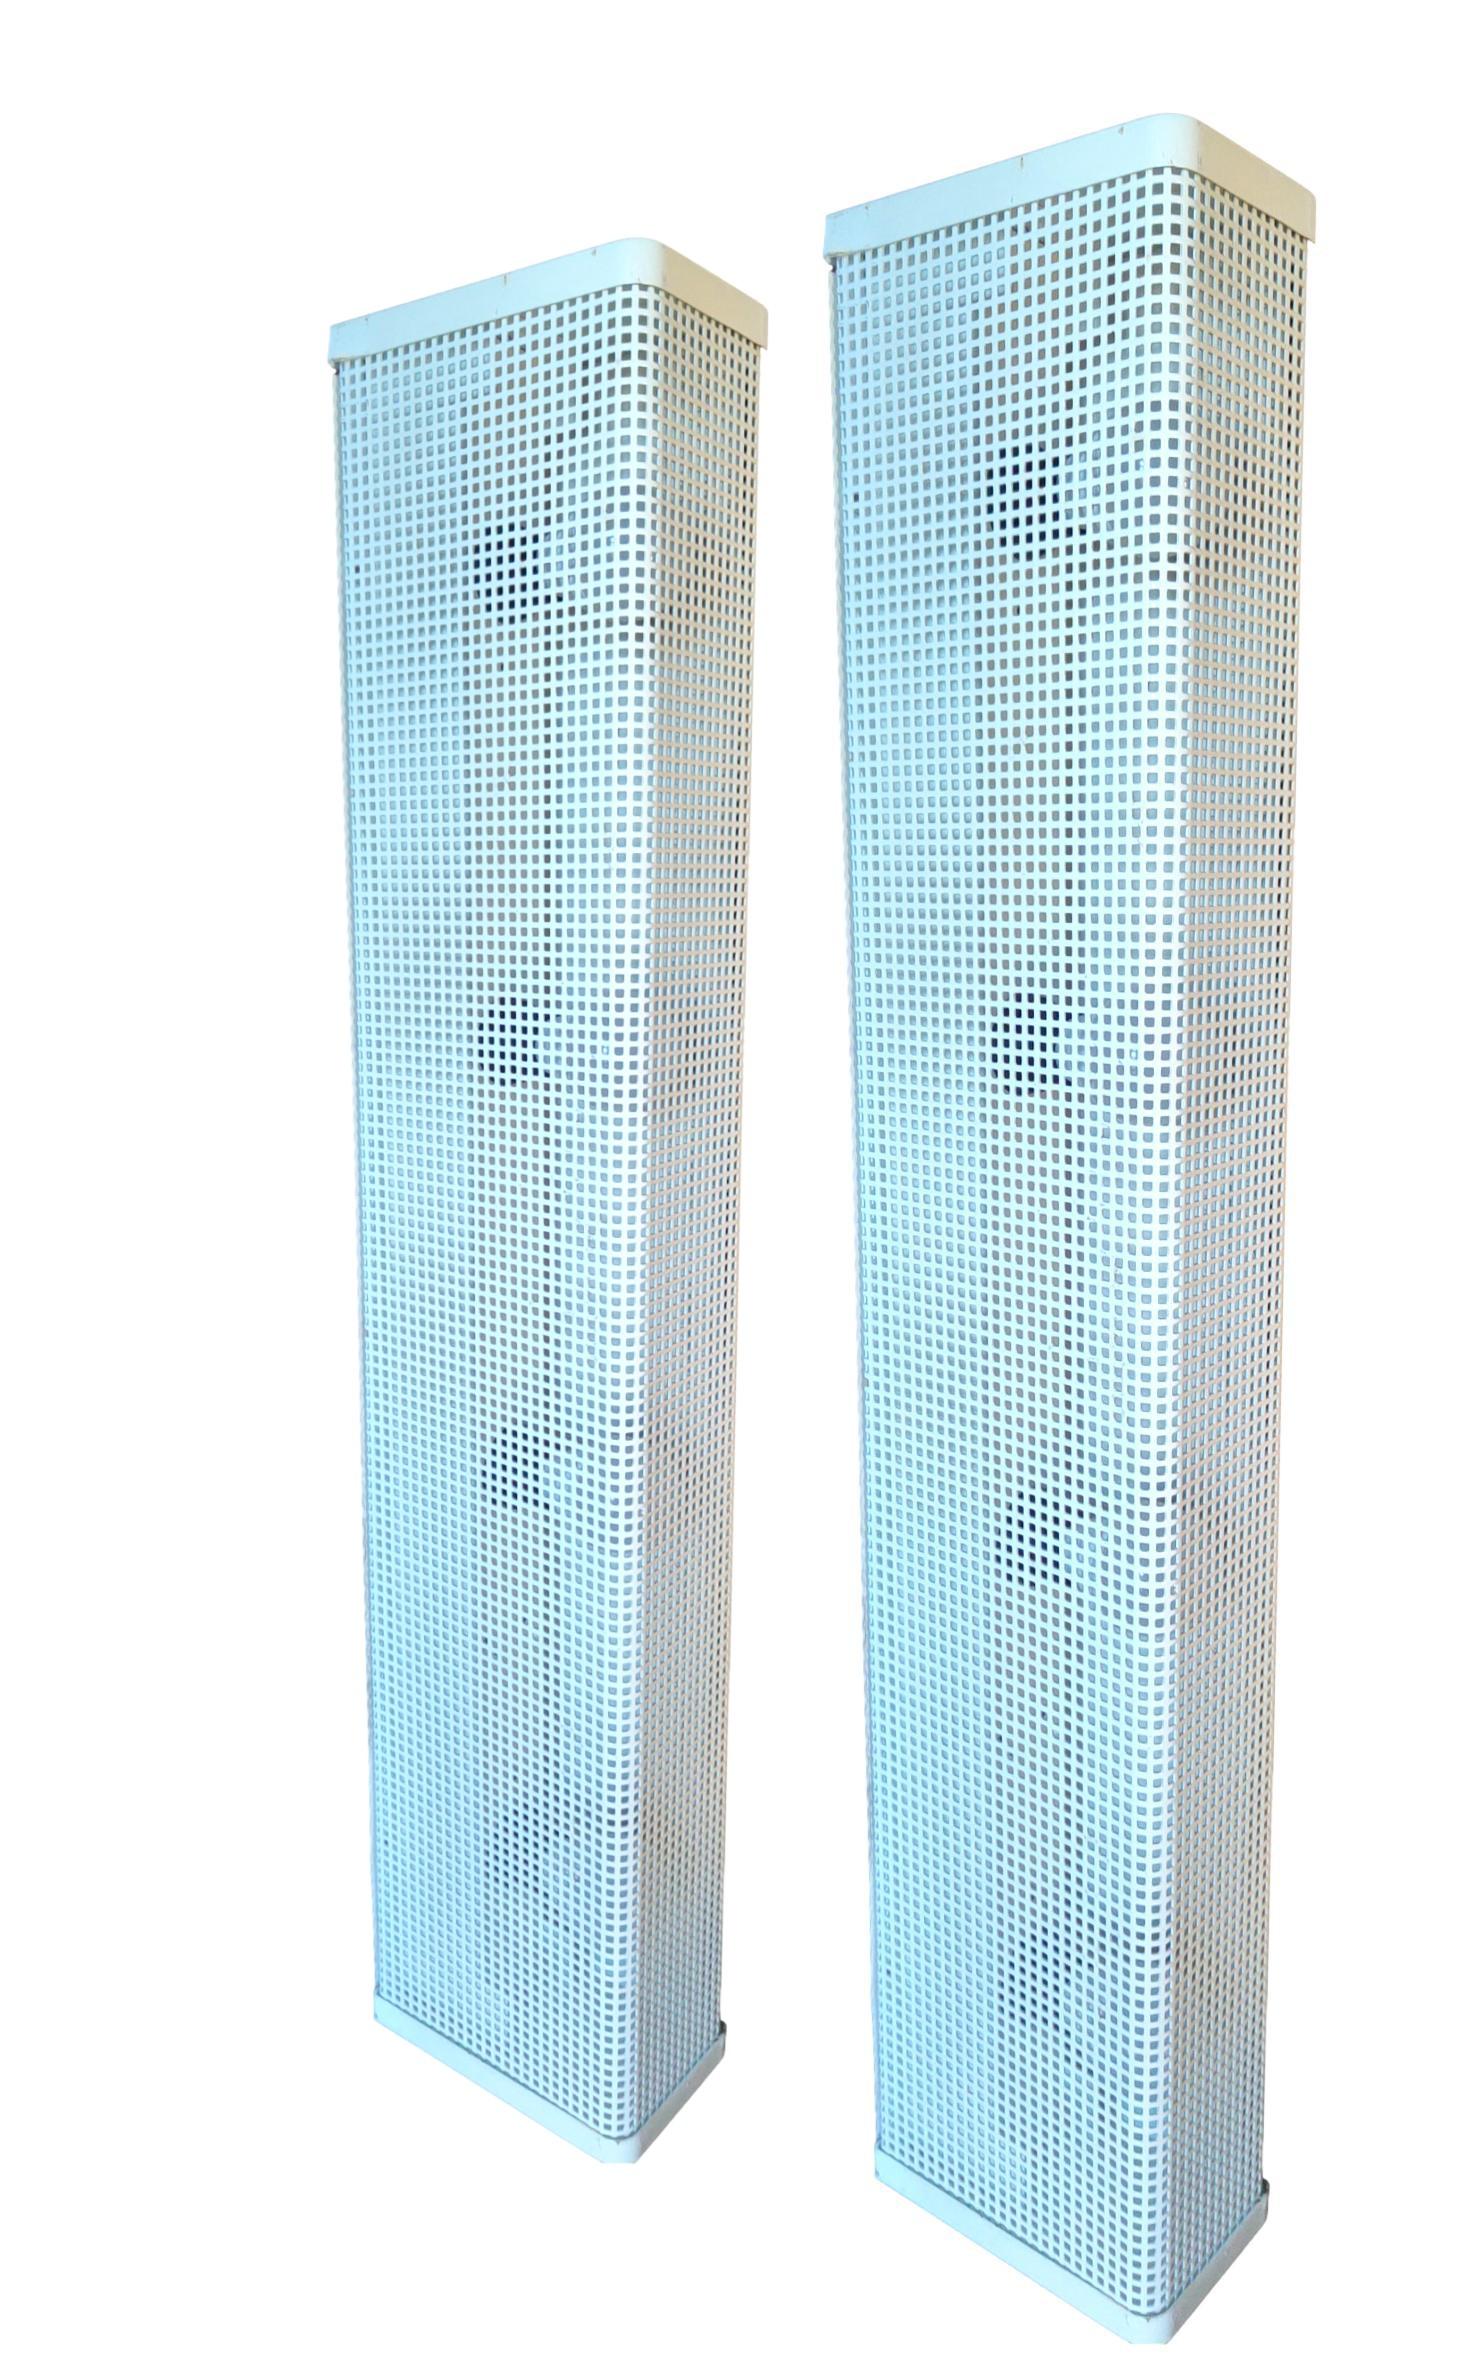 seltenes Paar von  originale lampen aus den 1970er jahren, wahrscheinlich von josef hoffmann entworfen, aus gelochtem weiß/beigem blech, bestückt mit 4 e14 lampenfassungen, die sowohl vertikal als auch horizontal aufgestellt werden können.
Sie